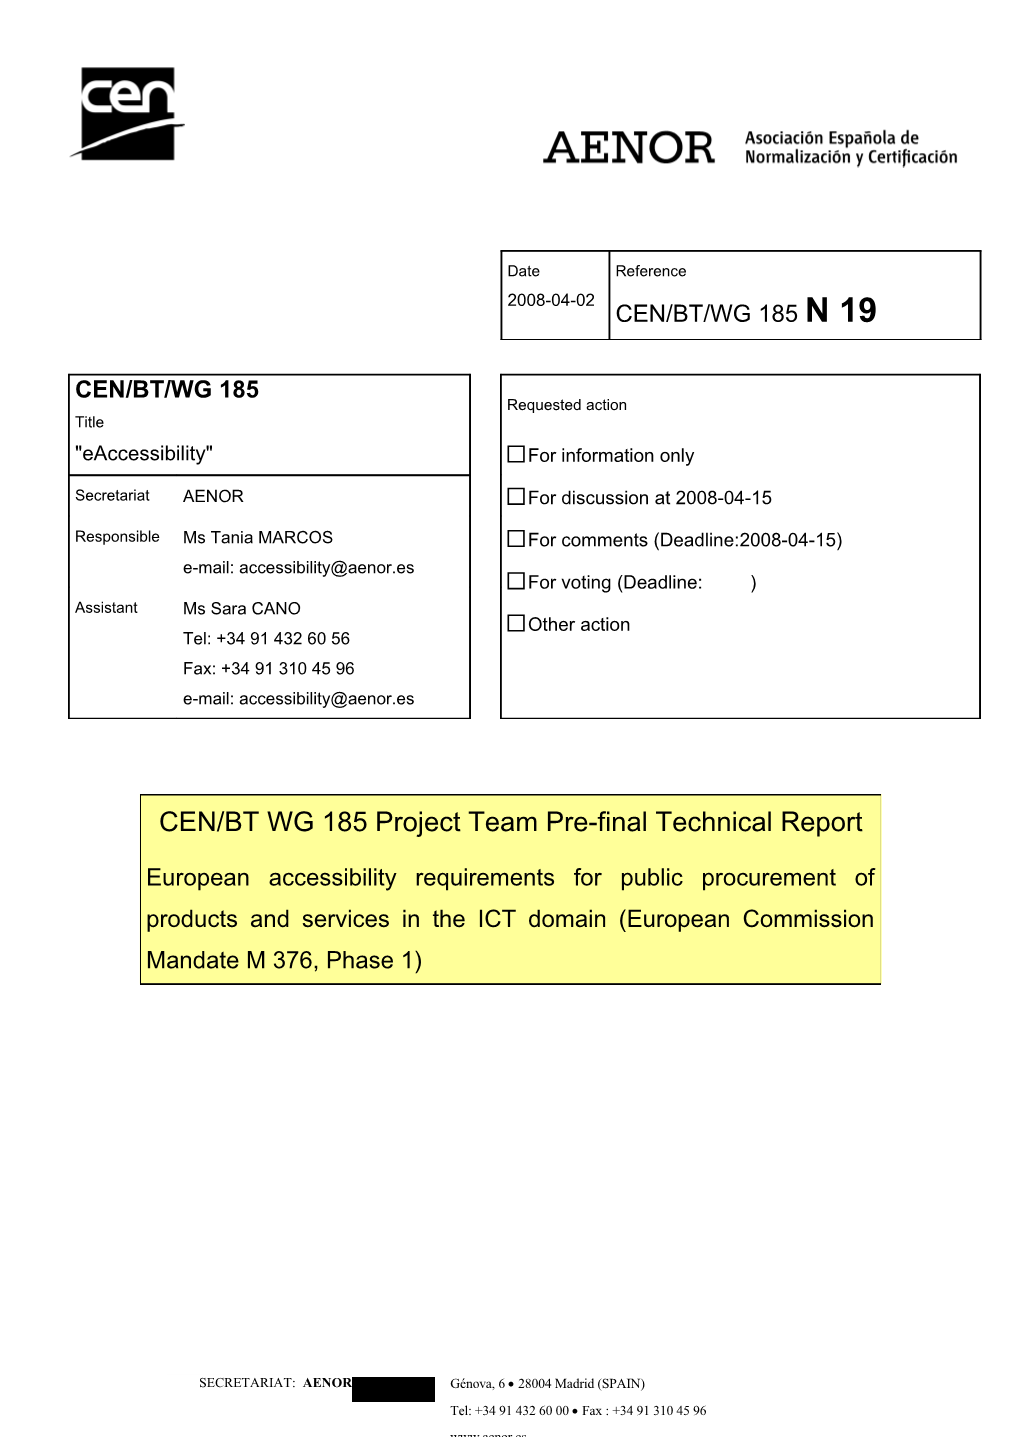 CEN/BT WG 185 Project Team Pre-Final Report